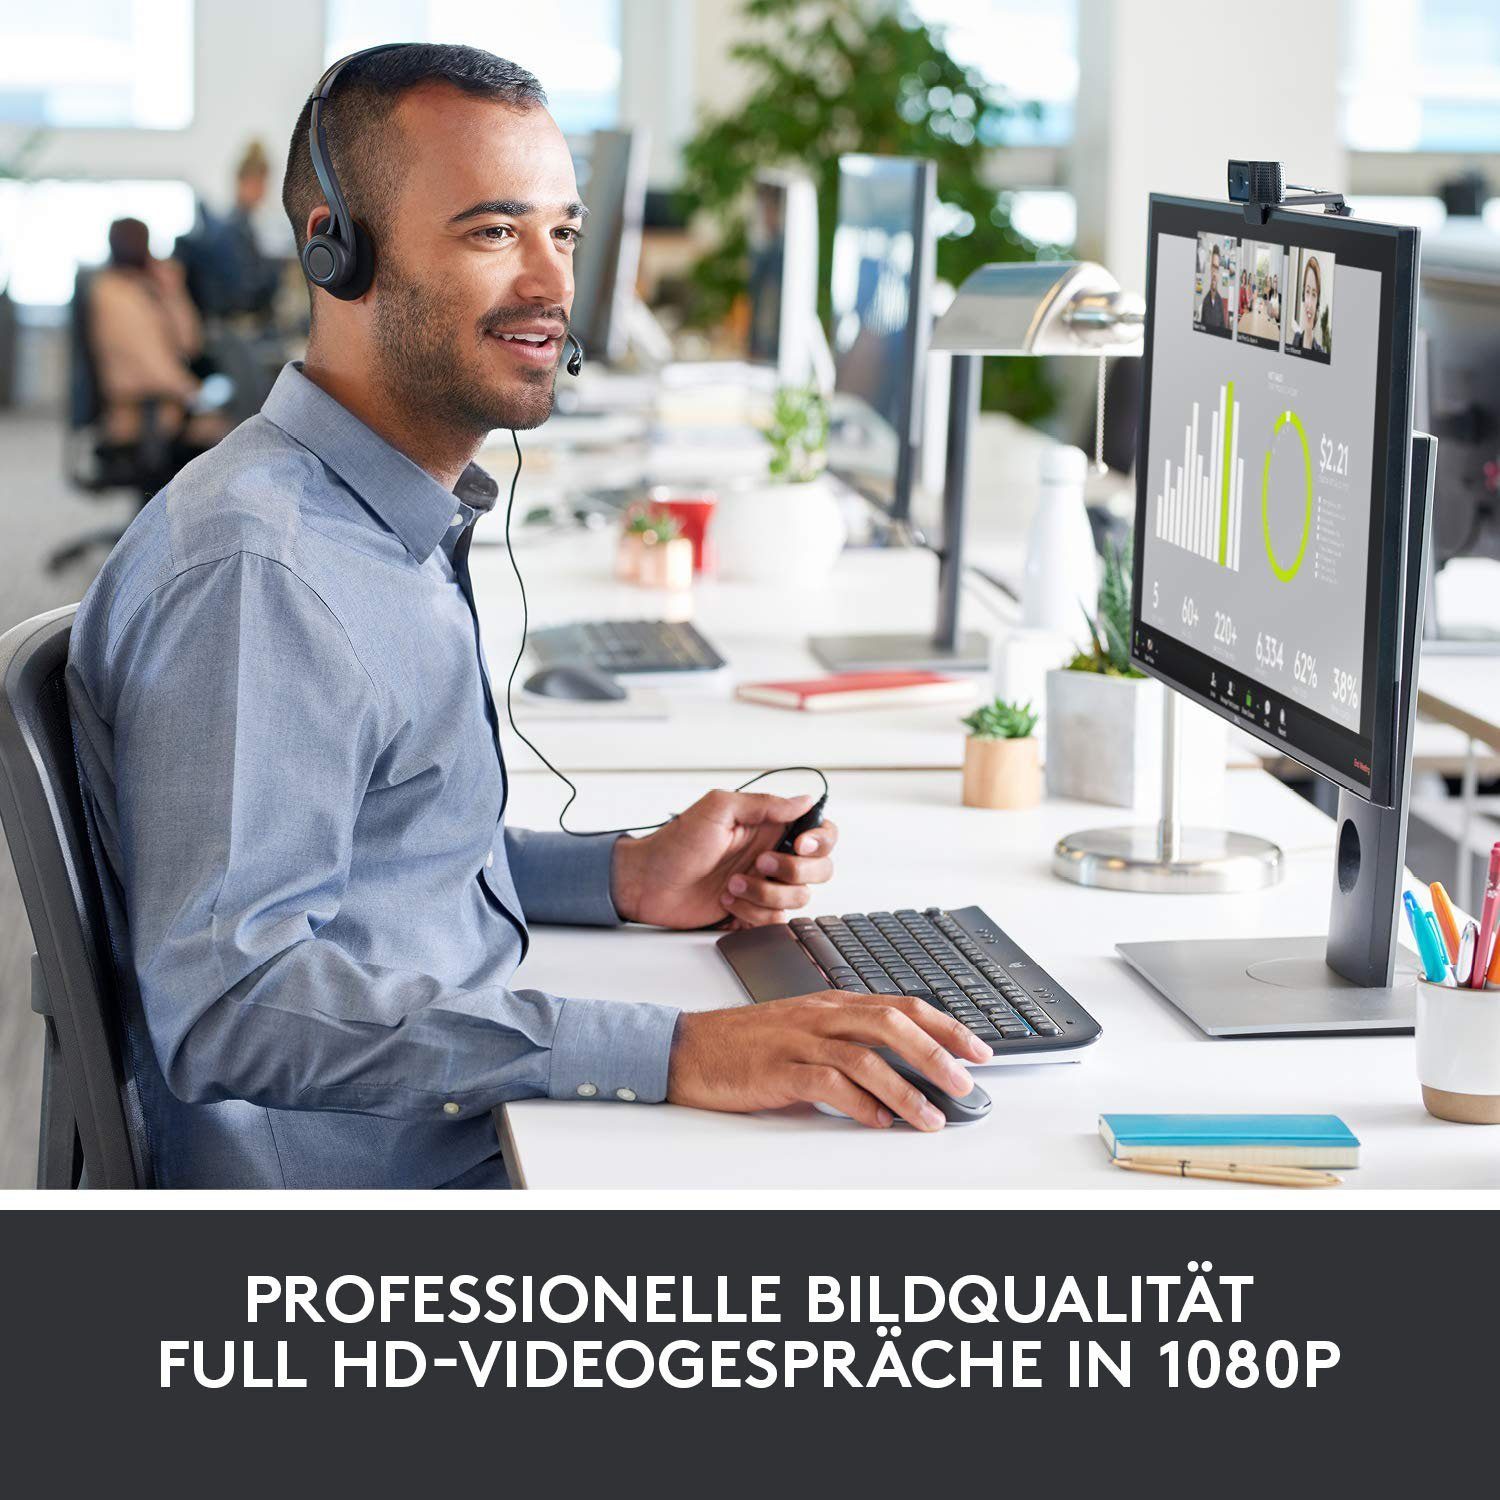 PRO HD) Logitech C920 Webcam HD (Full